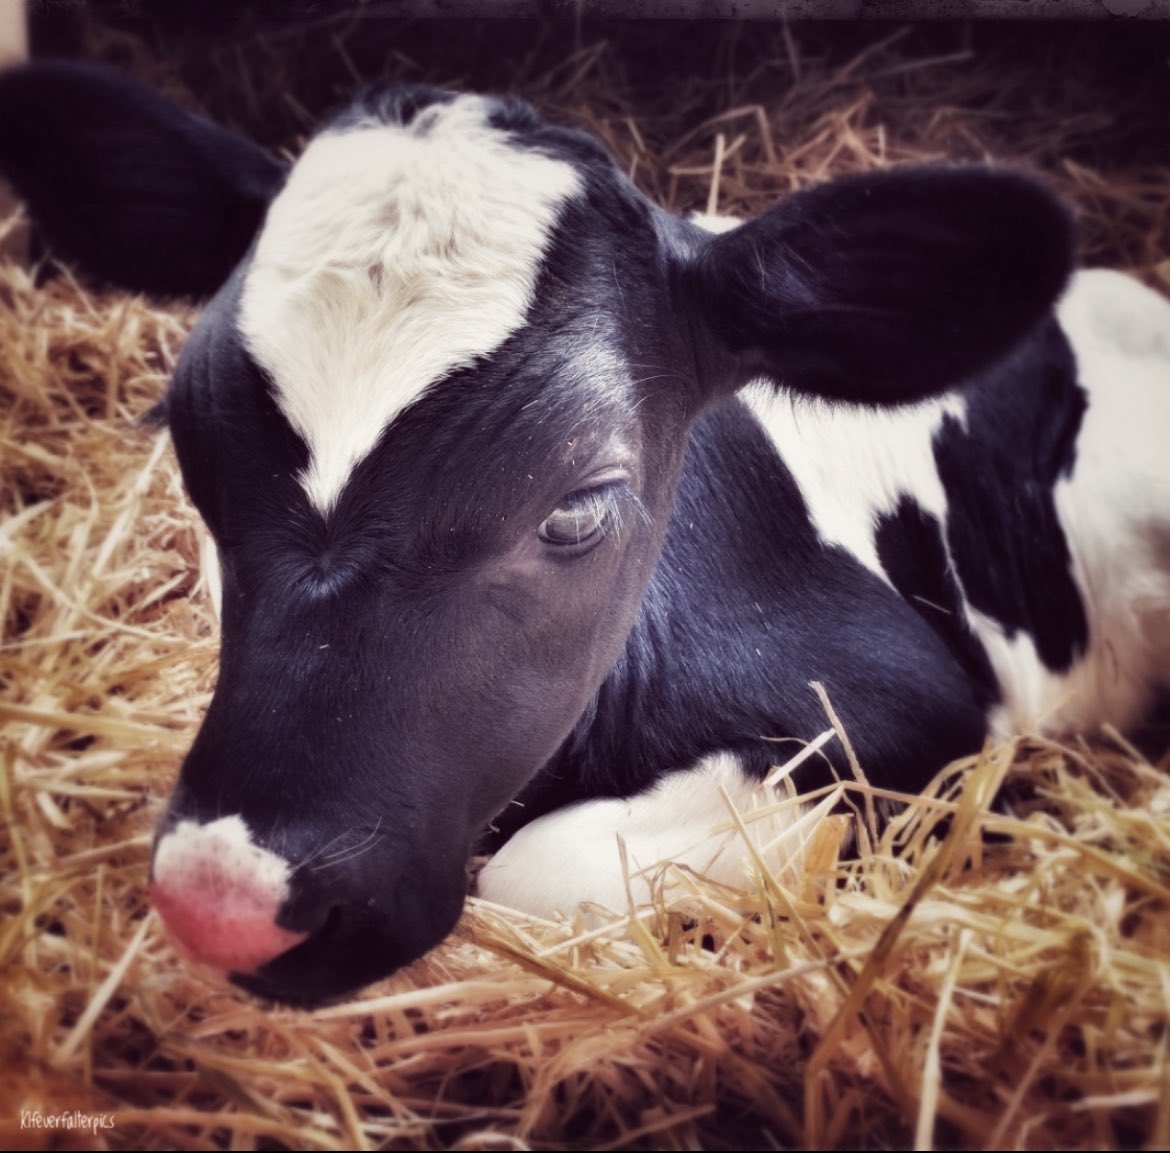 🧚‍♀️Ich mag Kühe , Kälber und photographiere die auch sehr gerne. Die 4 Bilder mag ich am liebsten . 
#SchoenesGegenDoofes 🐄 
#Kühe 🐮